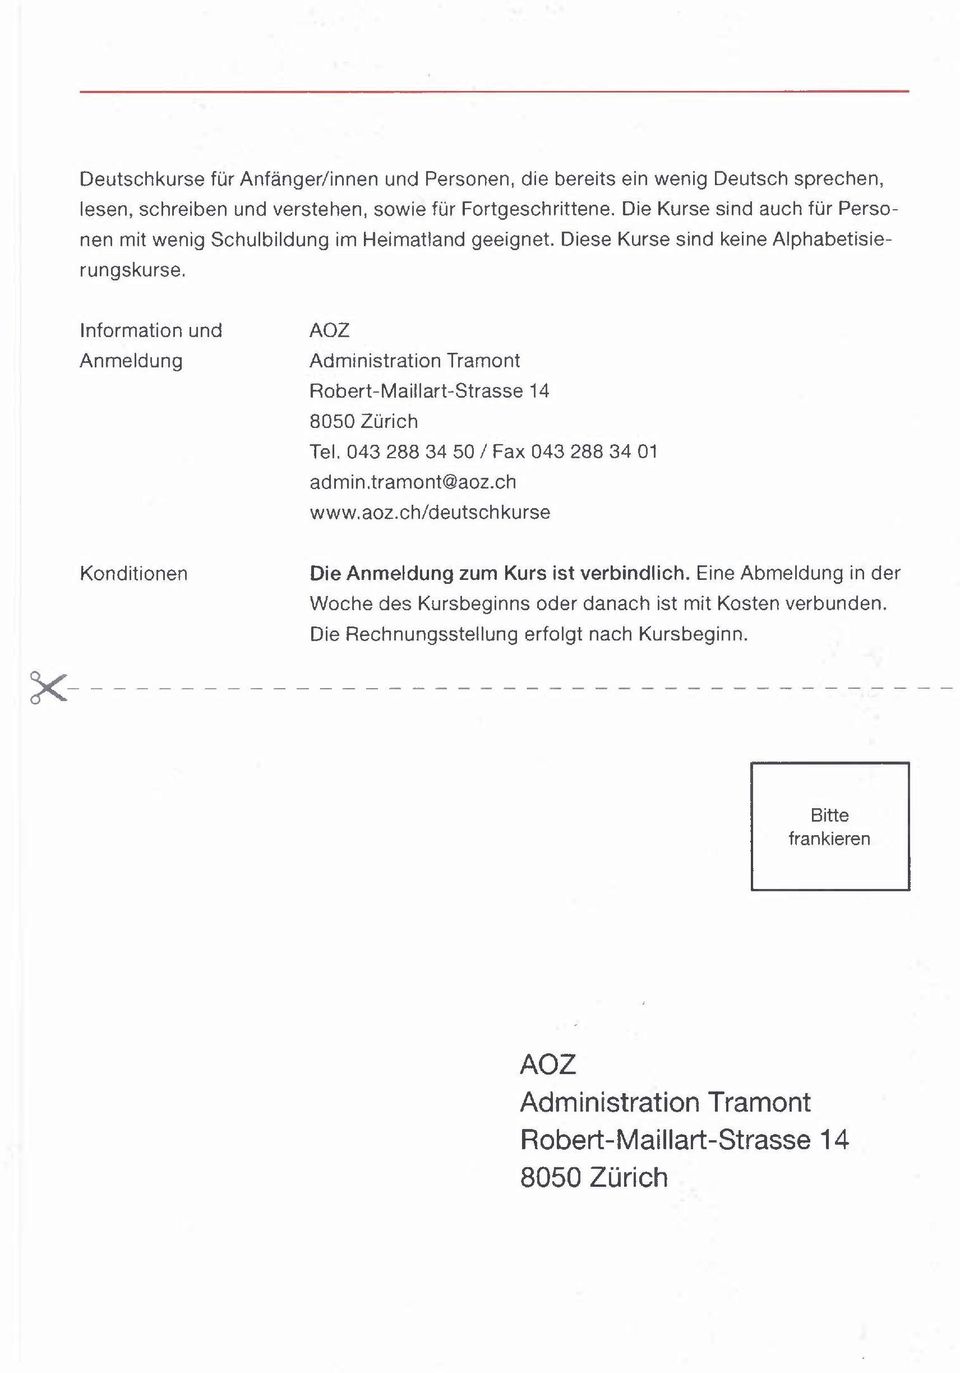 Information Anmeldung und AOZ Administration Tramont Robert-Maillart-Strasse 14 8050 Zürich Tel. 043 288 34 50 / Fax 043 288 34 01 admin.tramont@aoz.